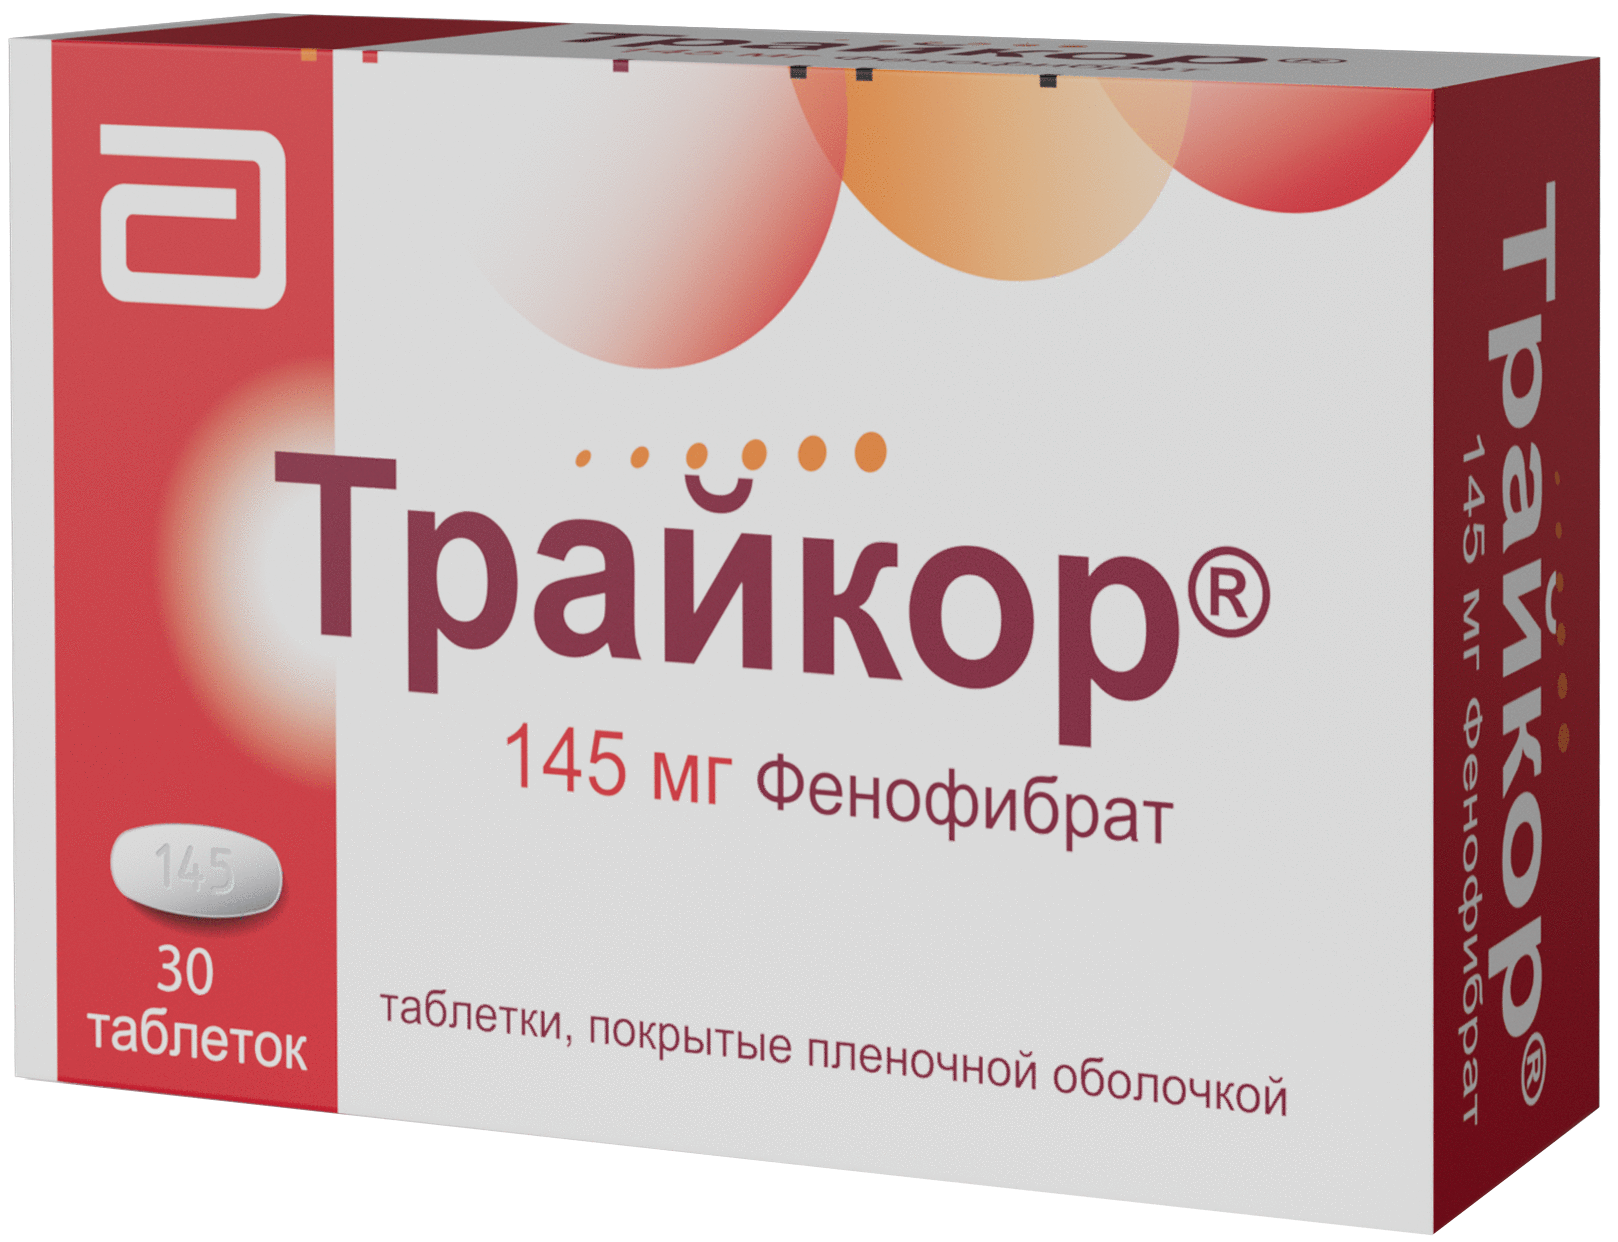 Трайкор® — таблетки, покрытые пленочной оболочкой, 145 мг, инструкция .